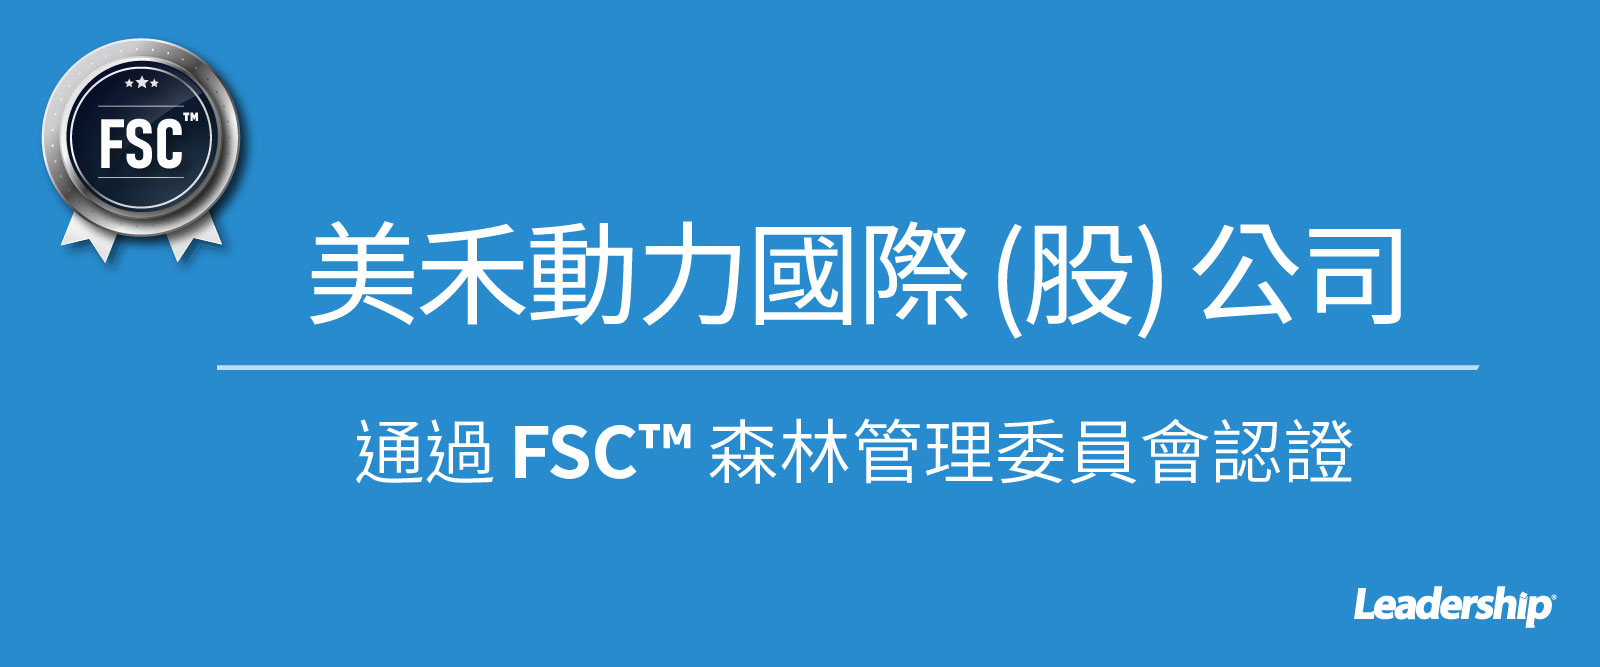 美禾動力國際 (股) 公司順利通過 FSC™ 認證